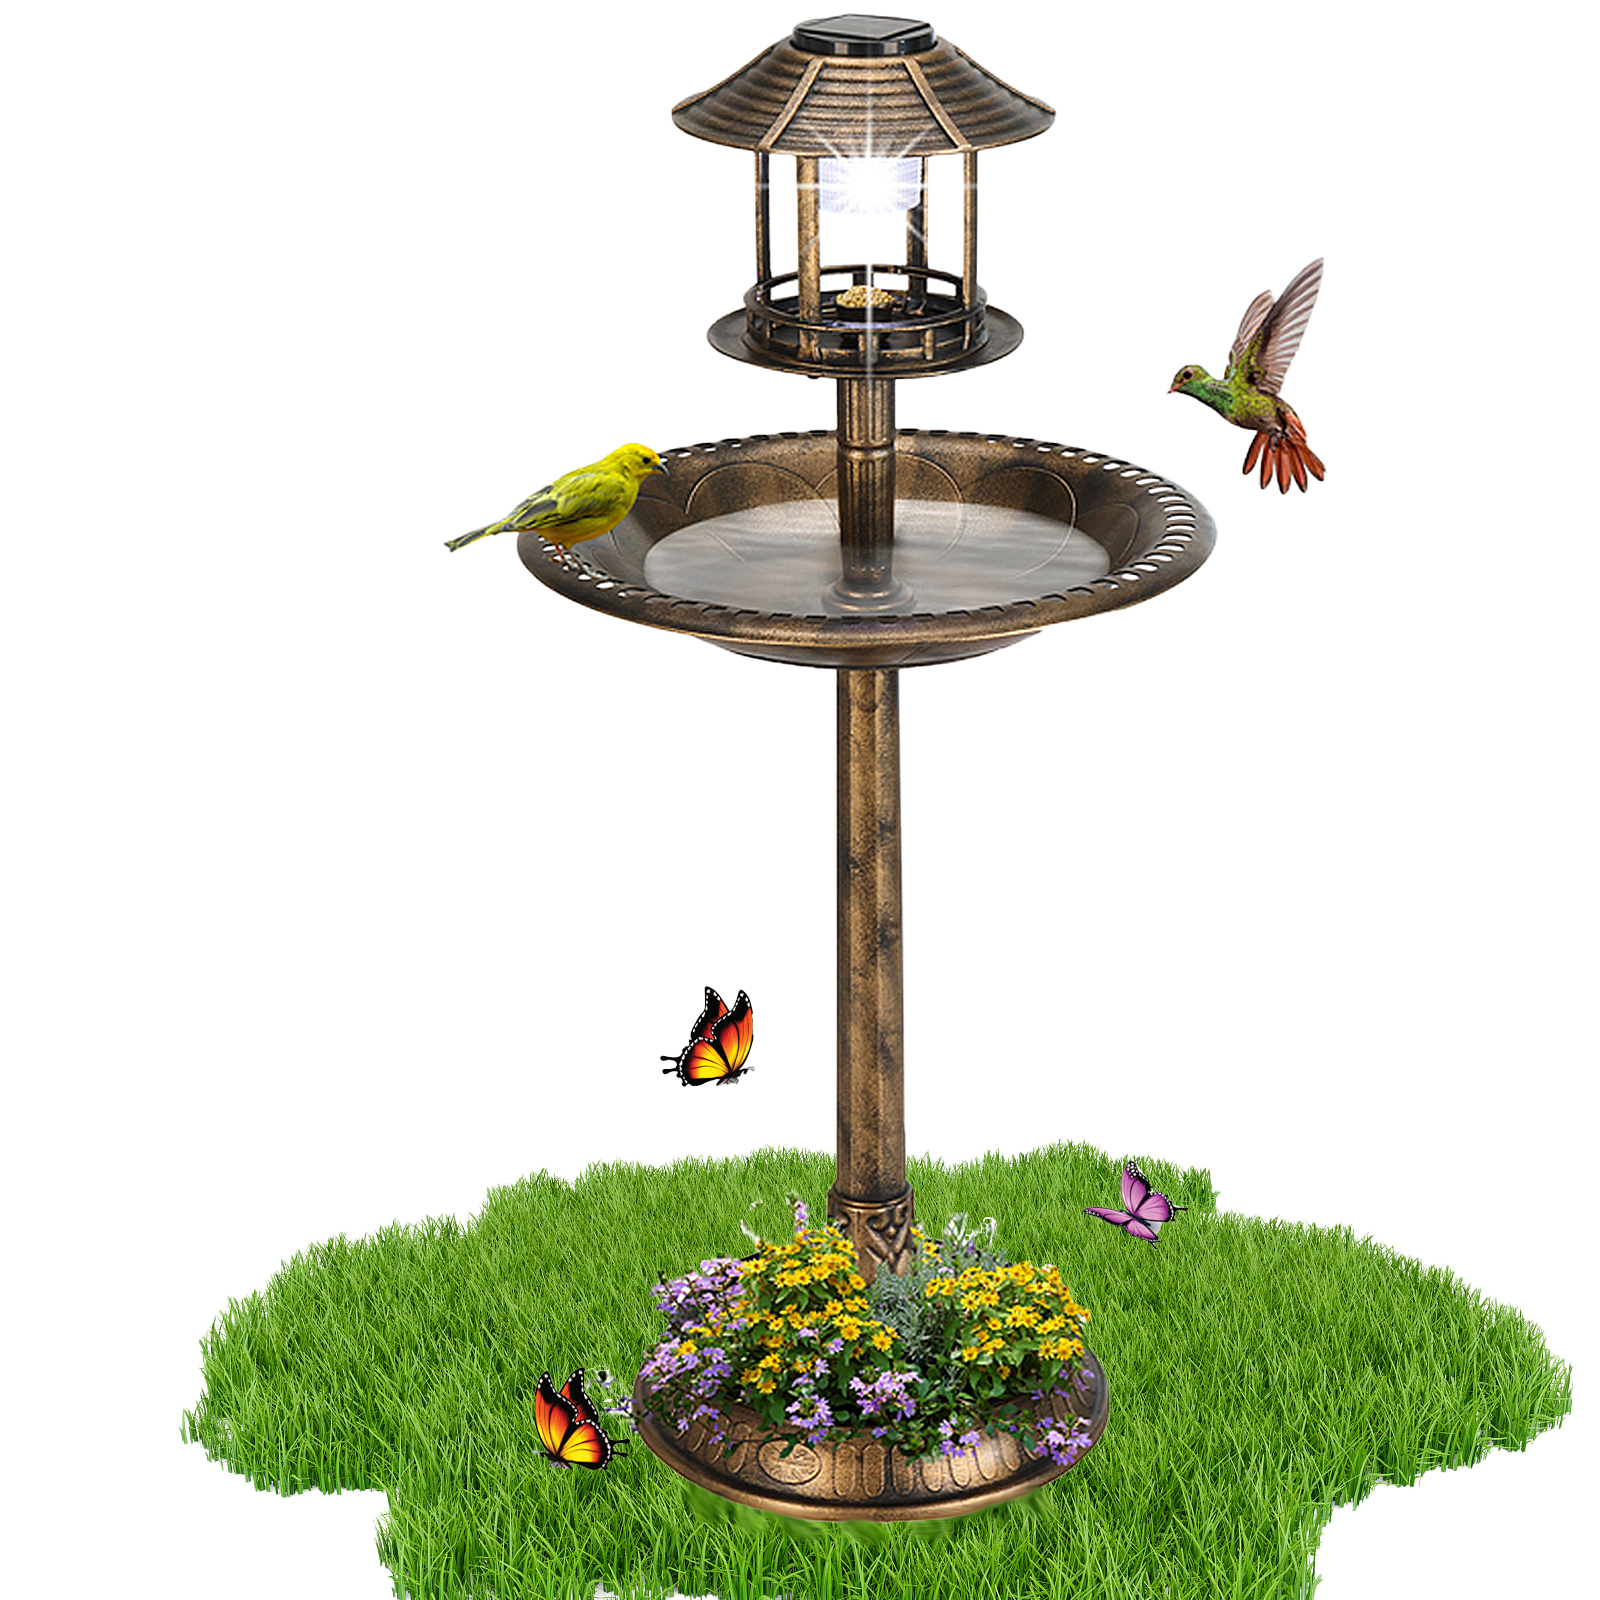 Seizeen Outdoor Bird Bath, 42''H Round Rustic Garden Birdbaths with Bird Feeder, Garden Decor w/Solar Light & Planter, Bronze - image 1 of 12